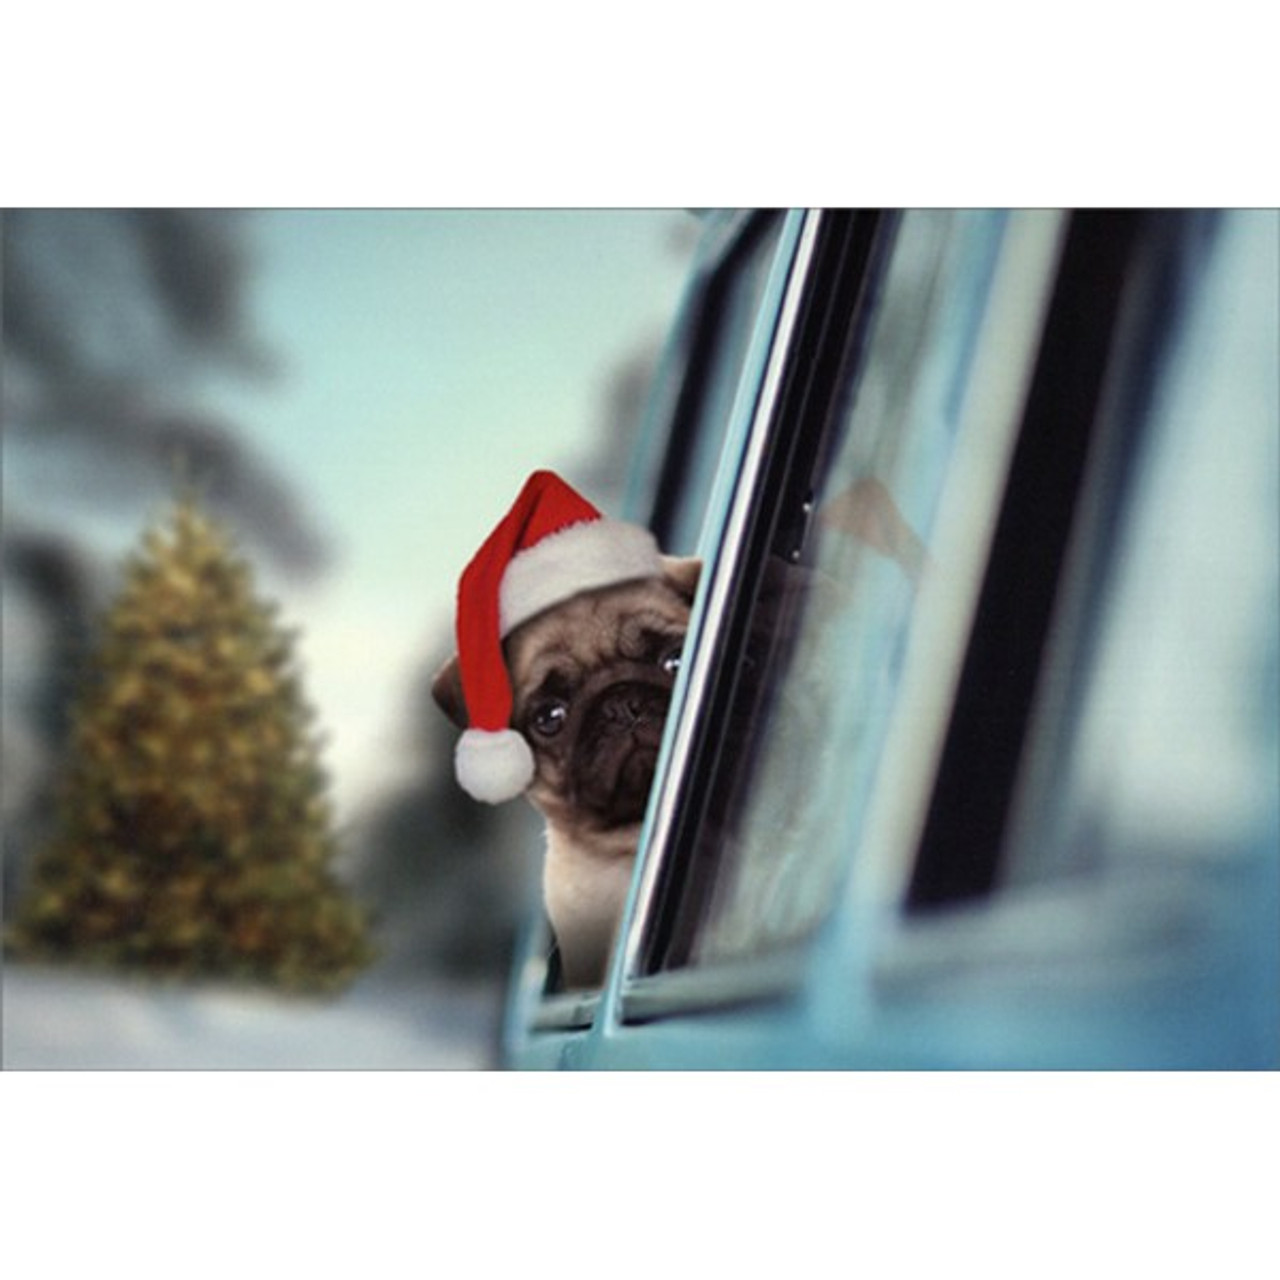 PUG PUPPY WITH CHRISTMAS GIFTS SINGLE DOG PRINT GREETING CHRISTMAS CARD